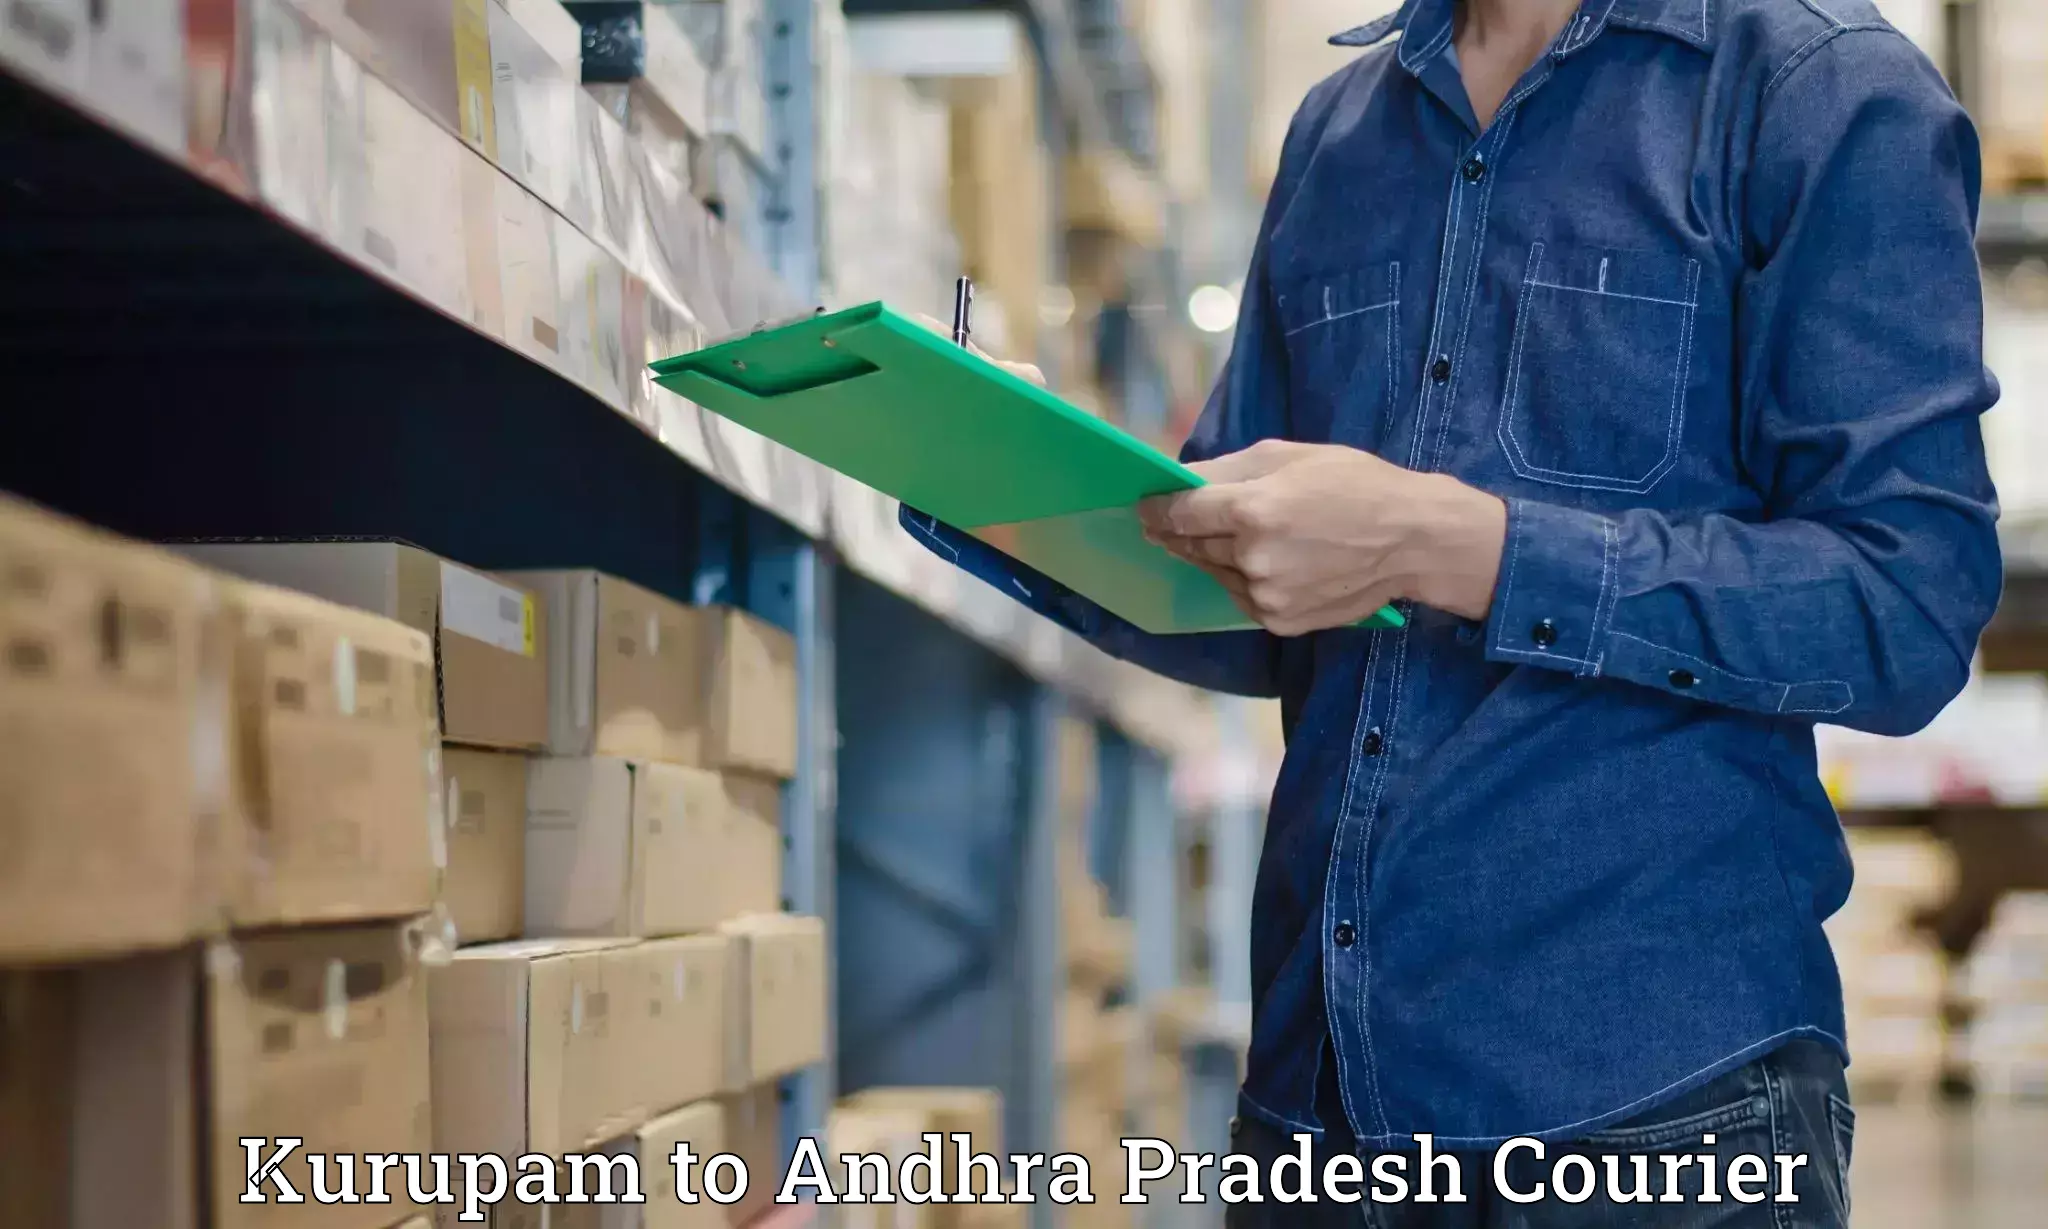 Advanced shipping network Kurupam to Nandigama